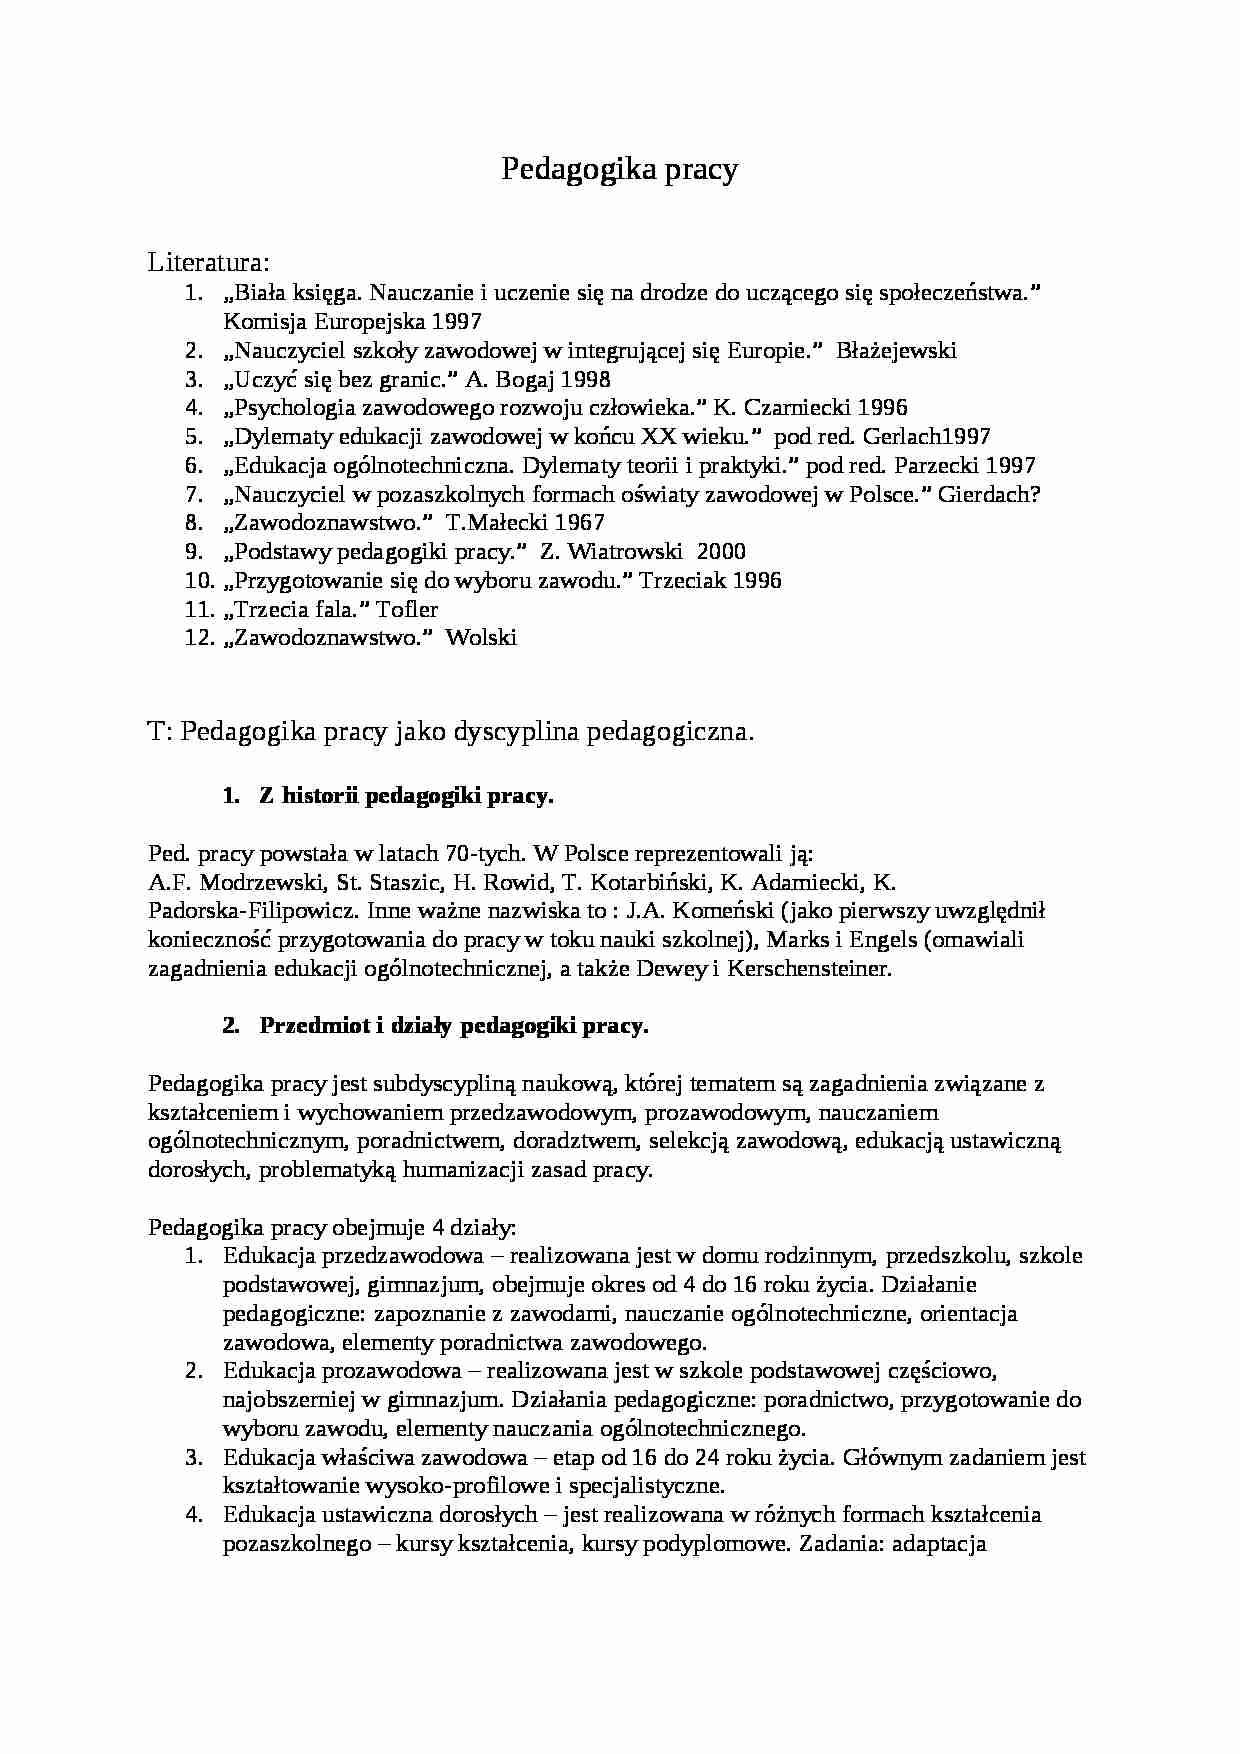 Pedagogika pracy- pedagogika - strona 1